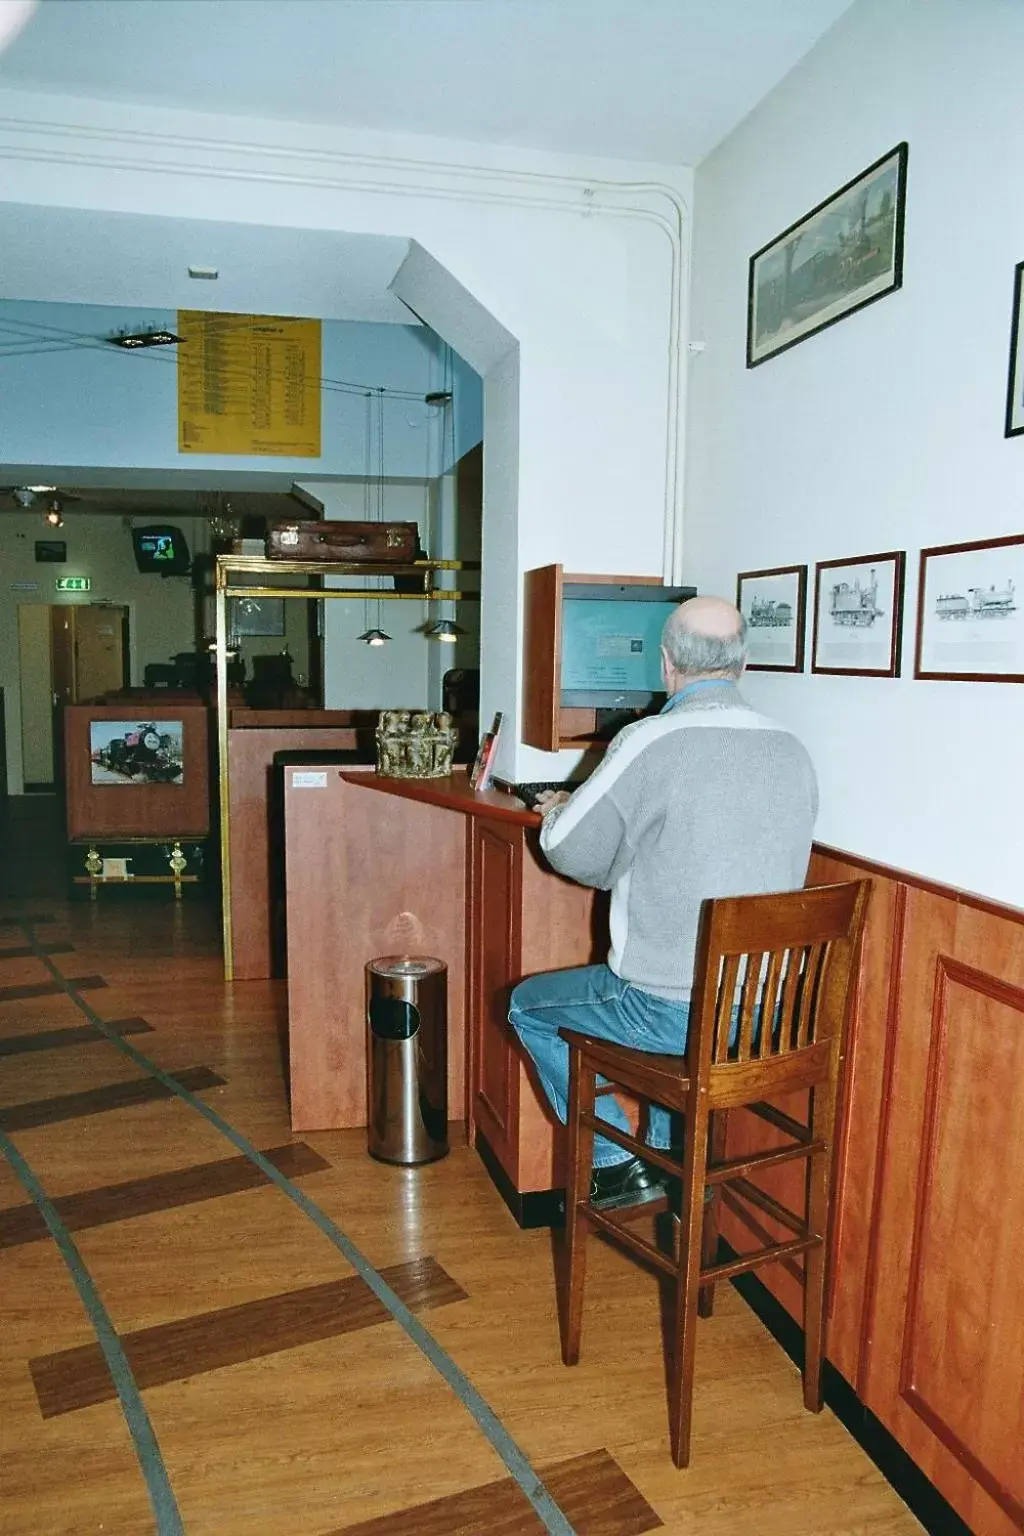 Lobby or reception in A-Train Hotel